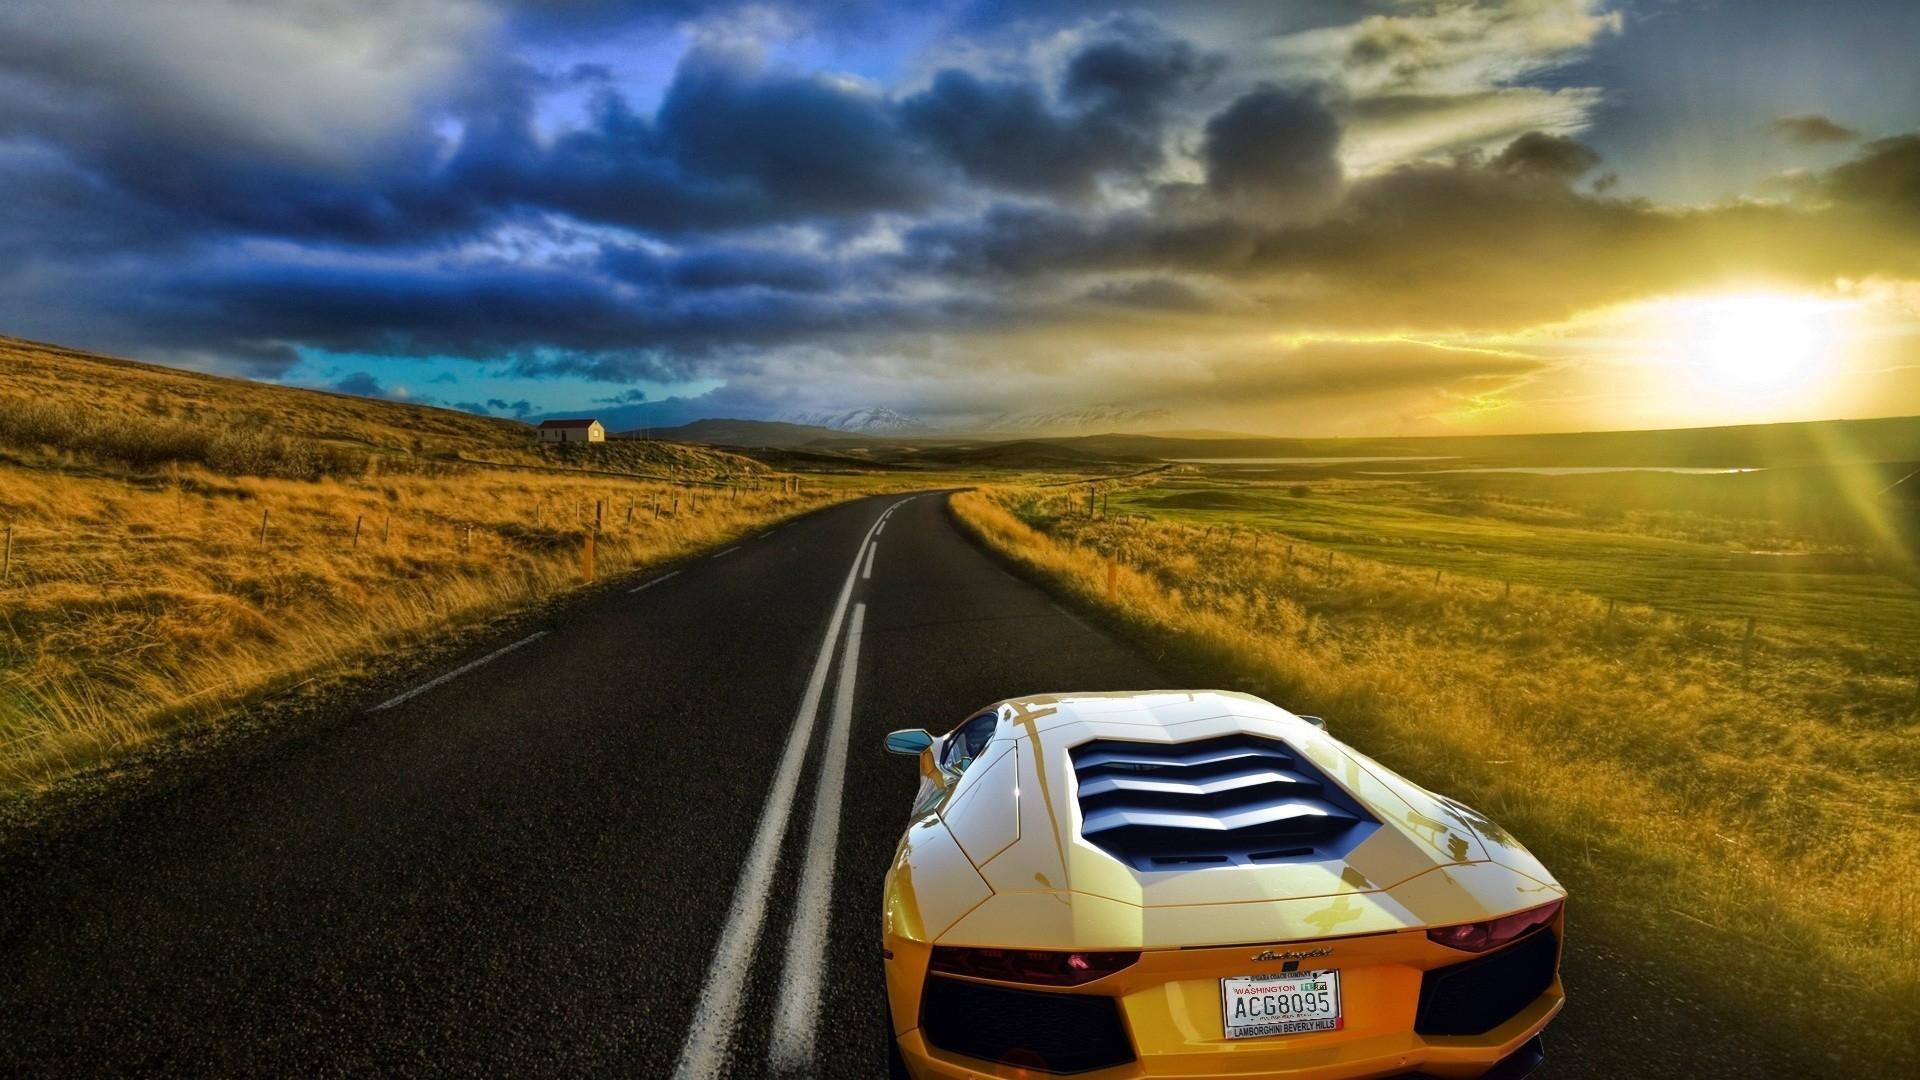 Lamborhgini Aventador Down A Beautiful Road - Lamborghini Aventador Sunset - HD Wallpaper 